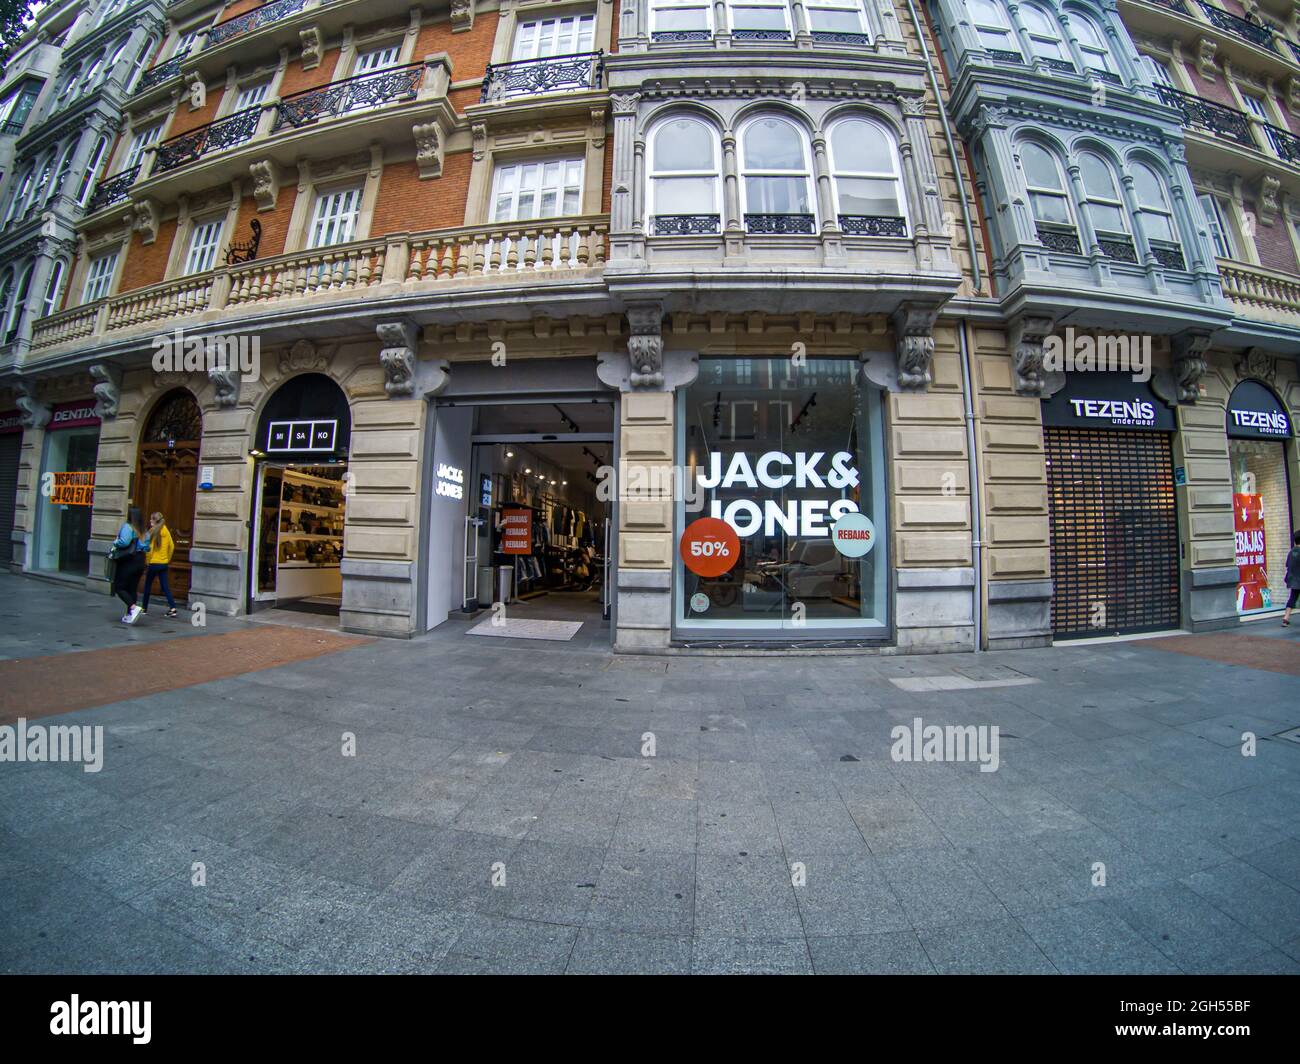 BILBAO, ESPAÑA - 24 de agosto de 2021: La tienda DE JACK Y JONES de la  marca con letreros y logotipo en España Fotografía de stock - Alamy